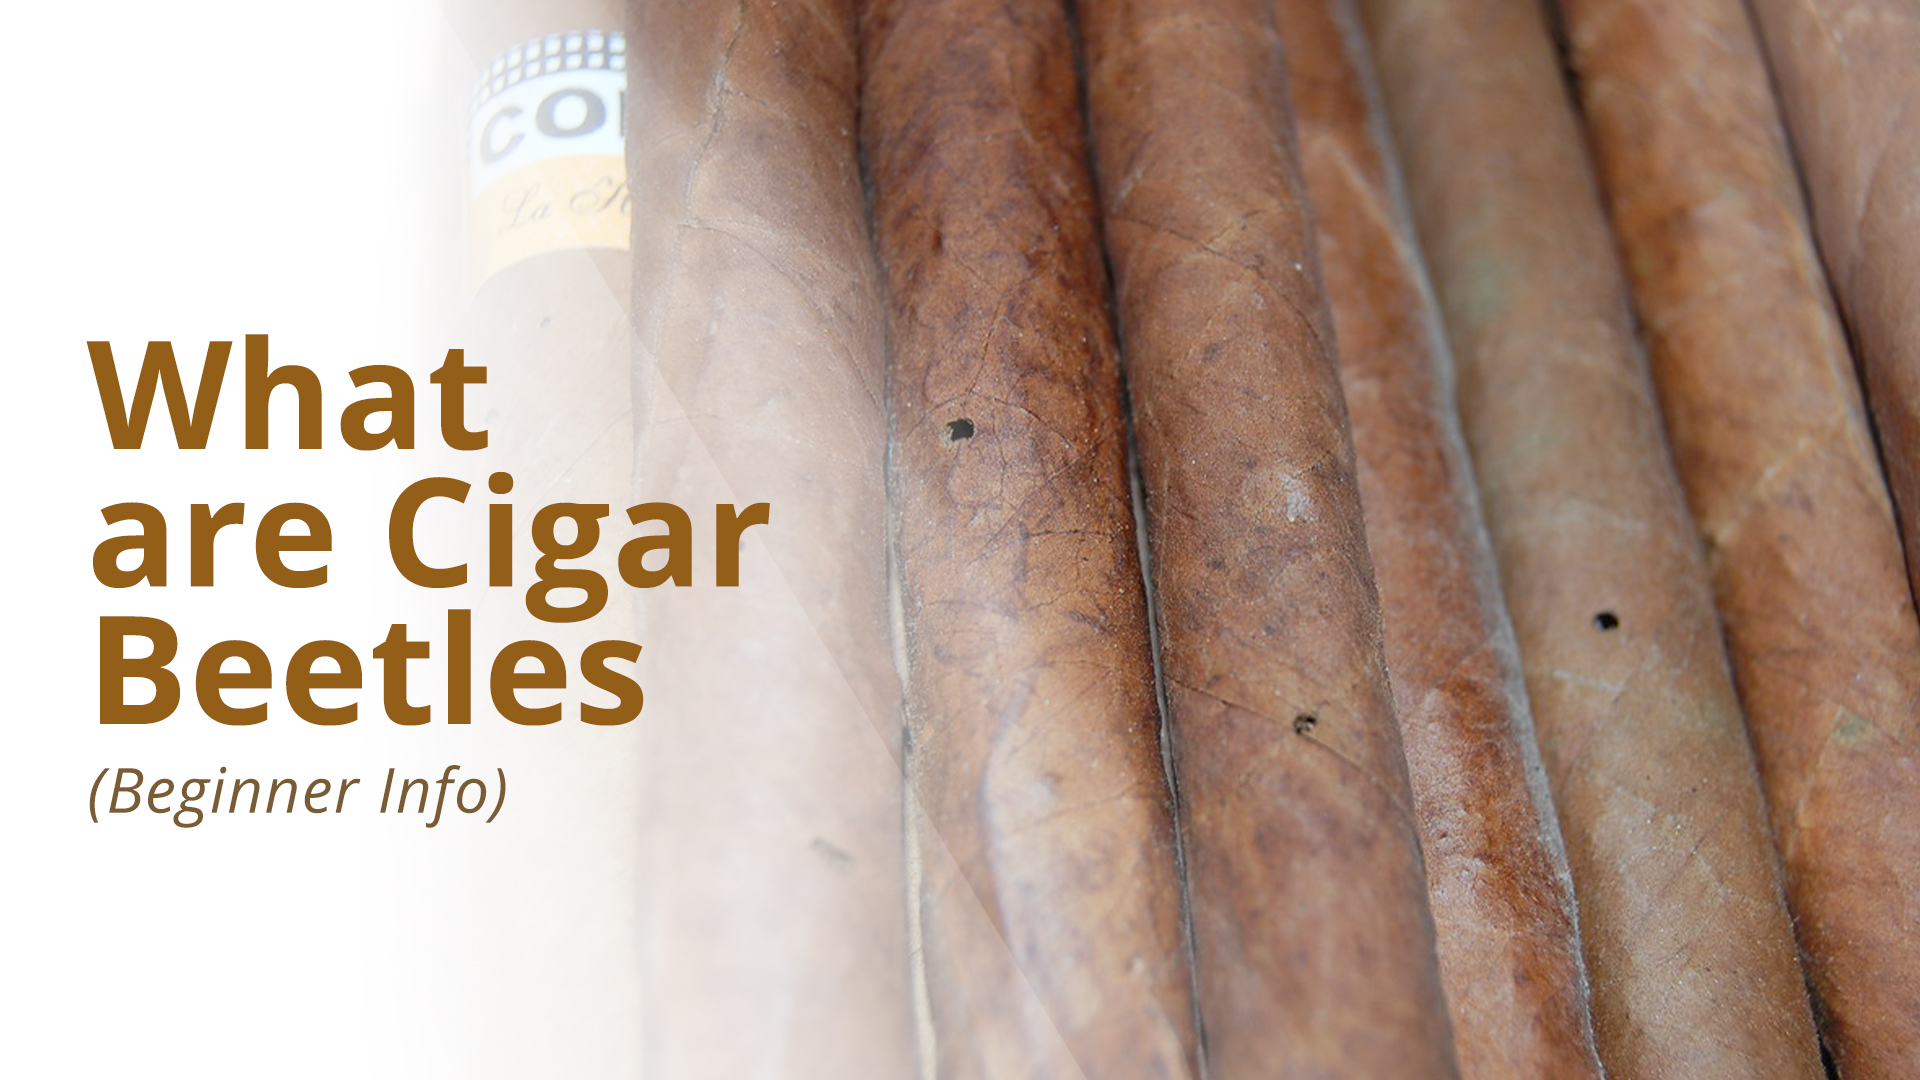 Cigar beetles